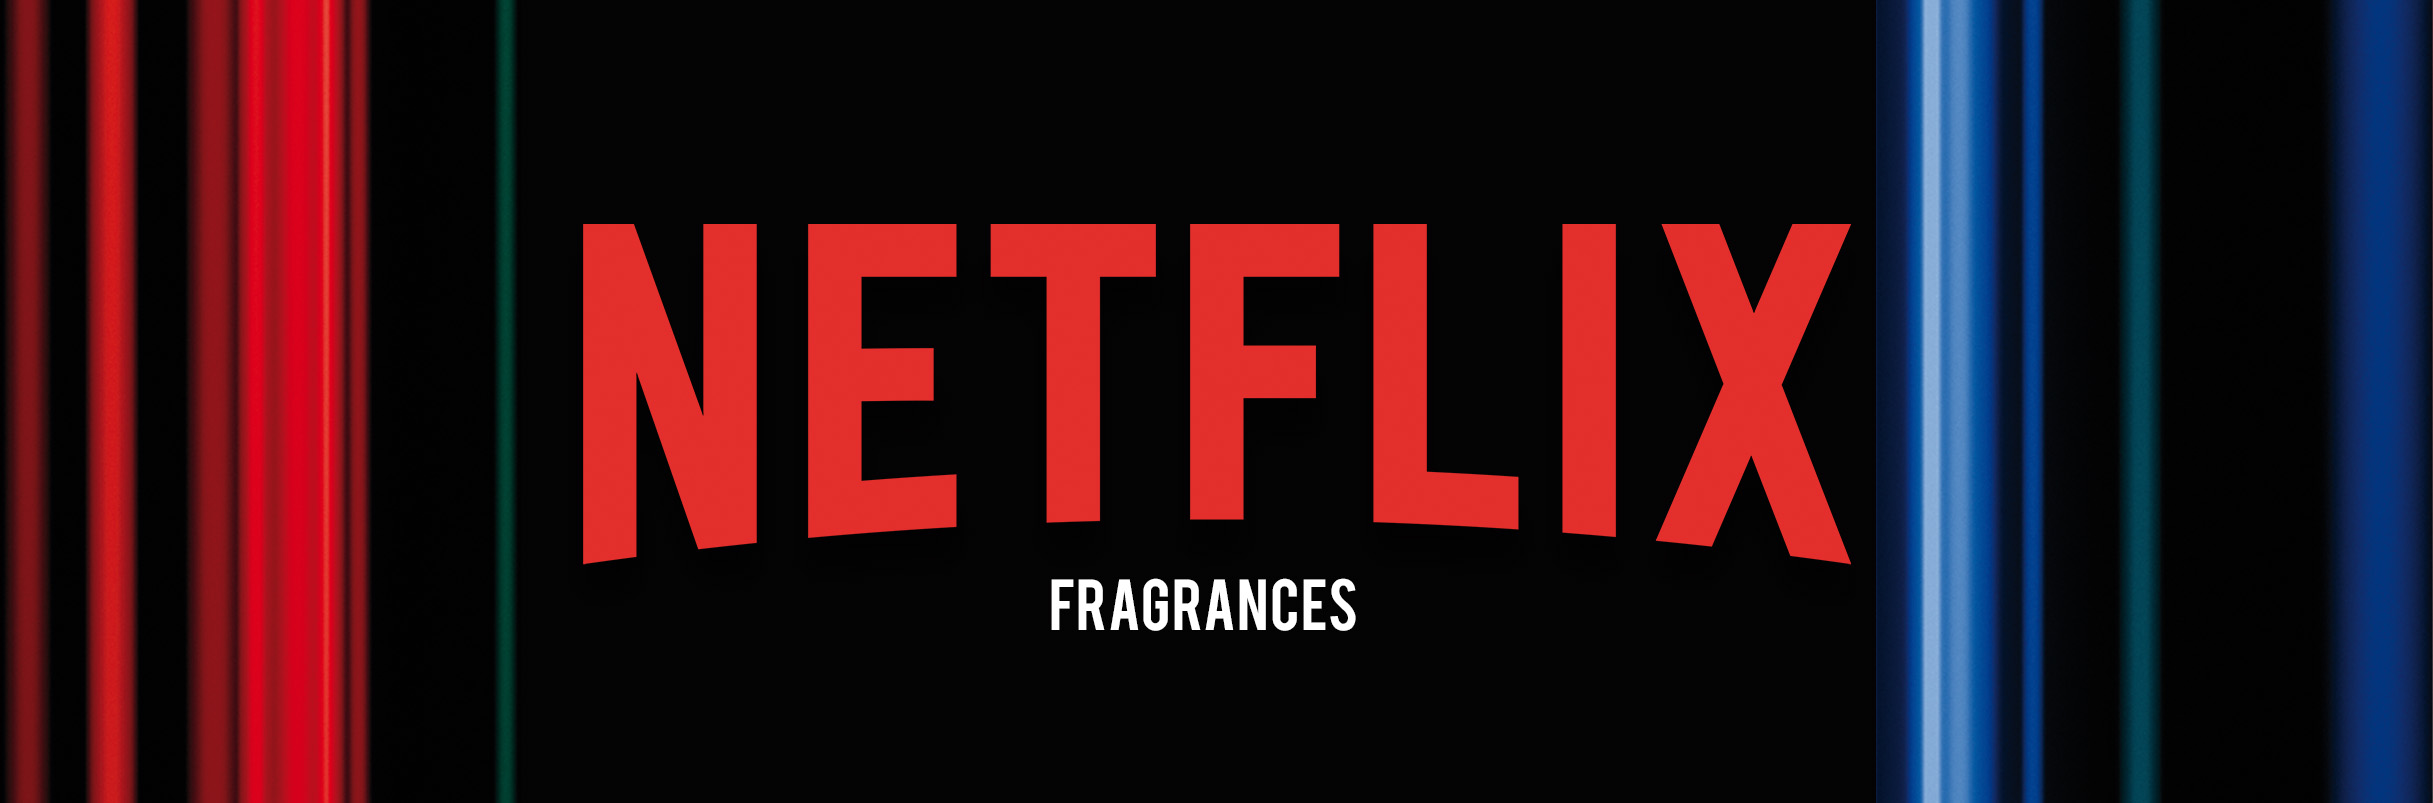 The Netflix fragrances